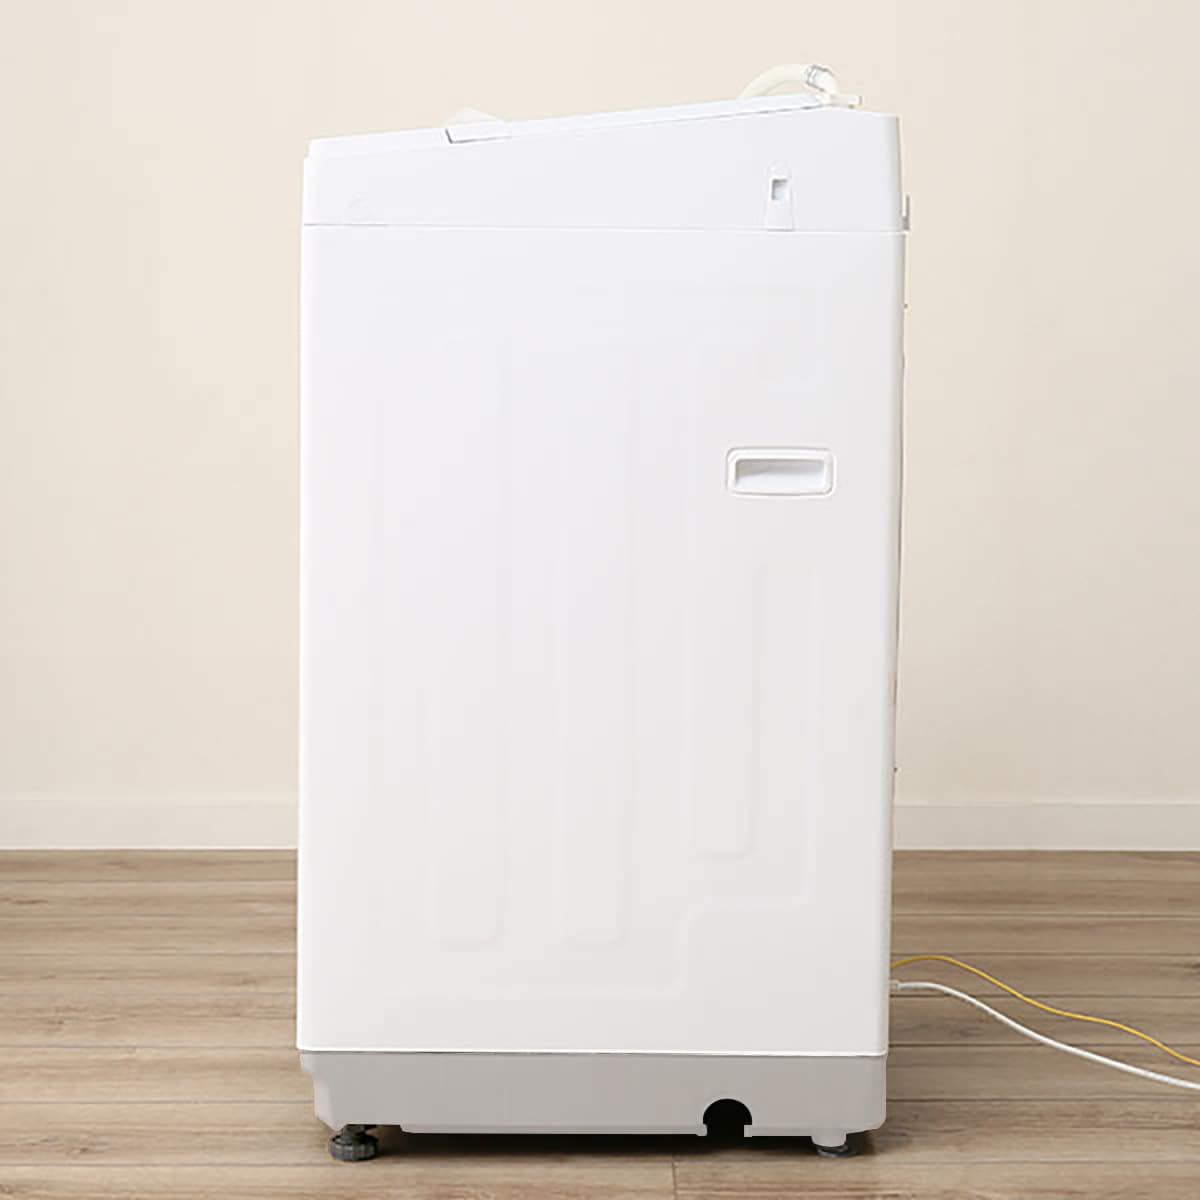 生活家電 洗濯機 6kg全自動洗濯機(NTR60)【期間限定お試し価格:5/3~6/12まで】通販 